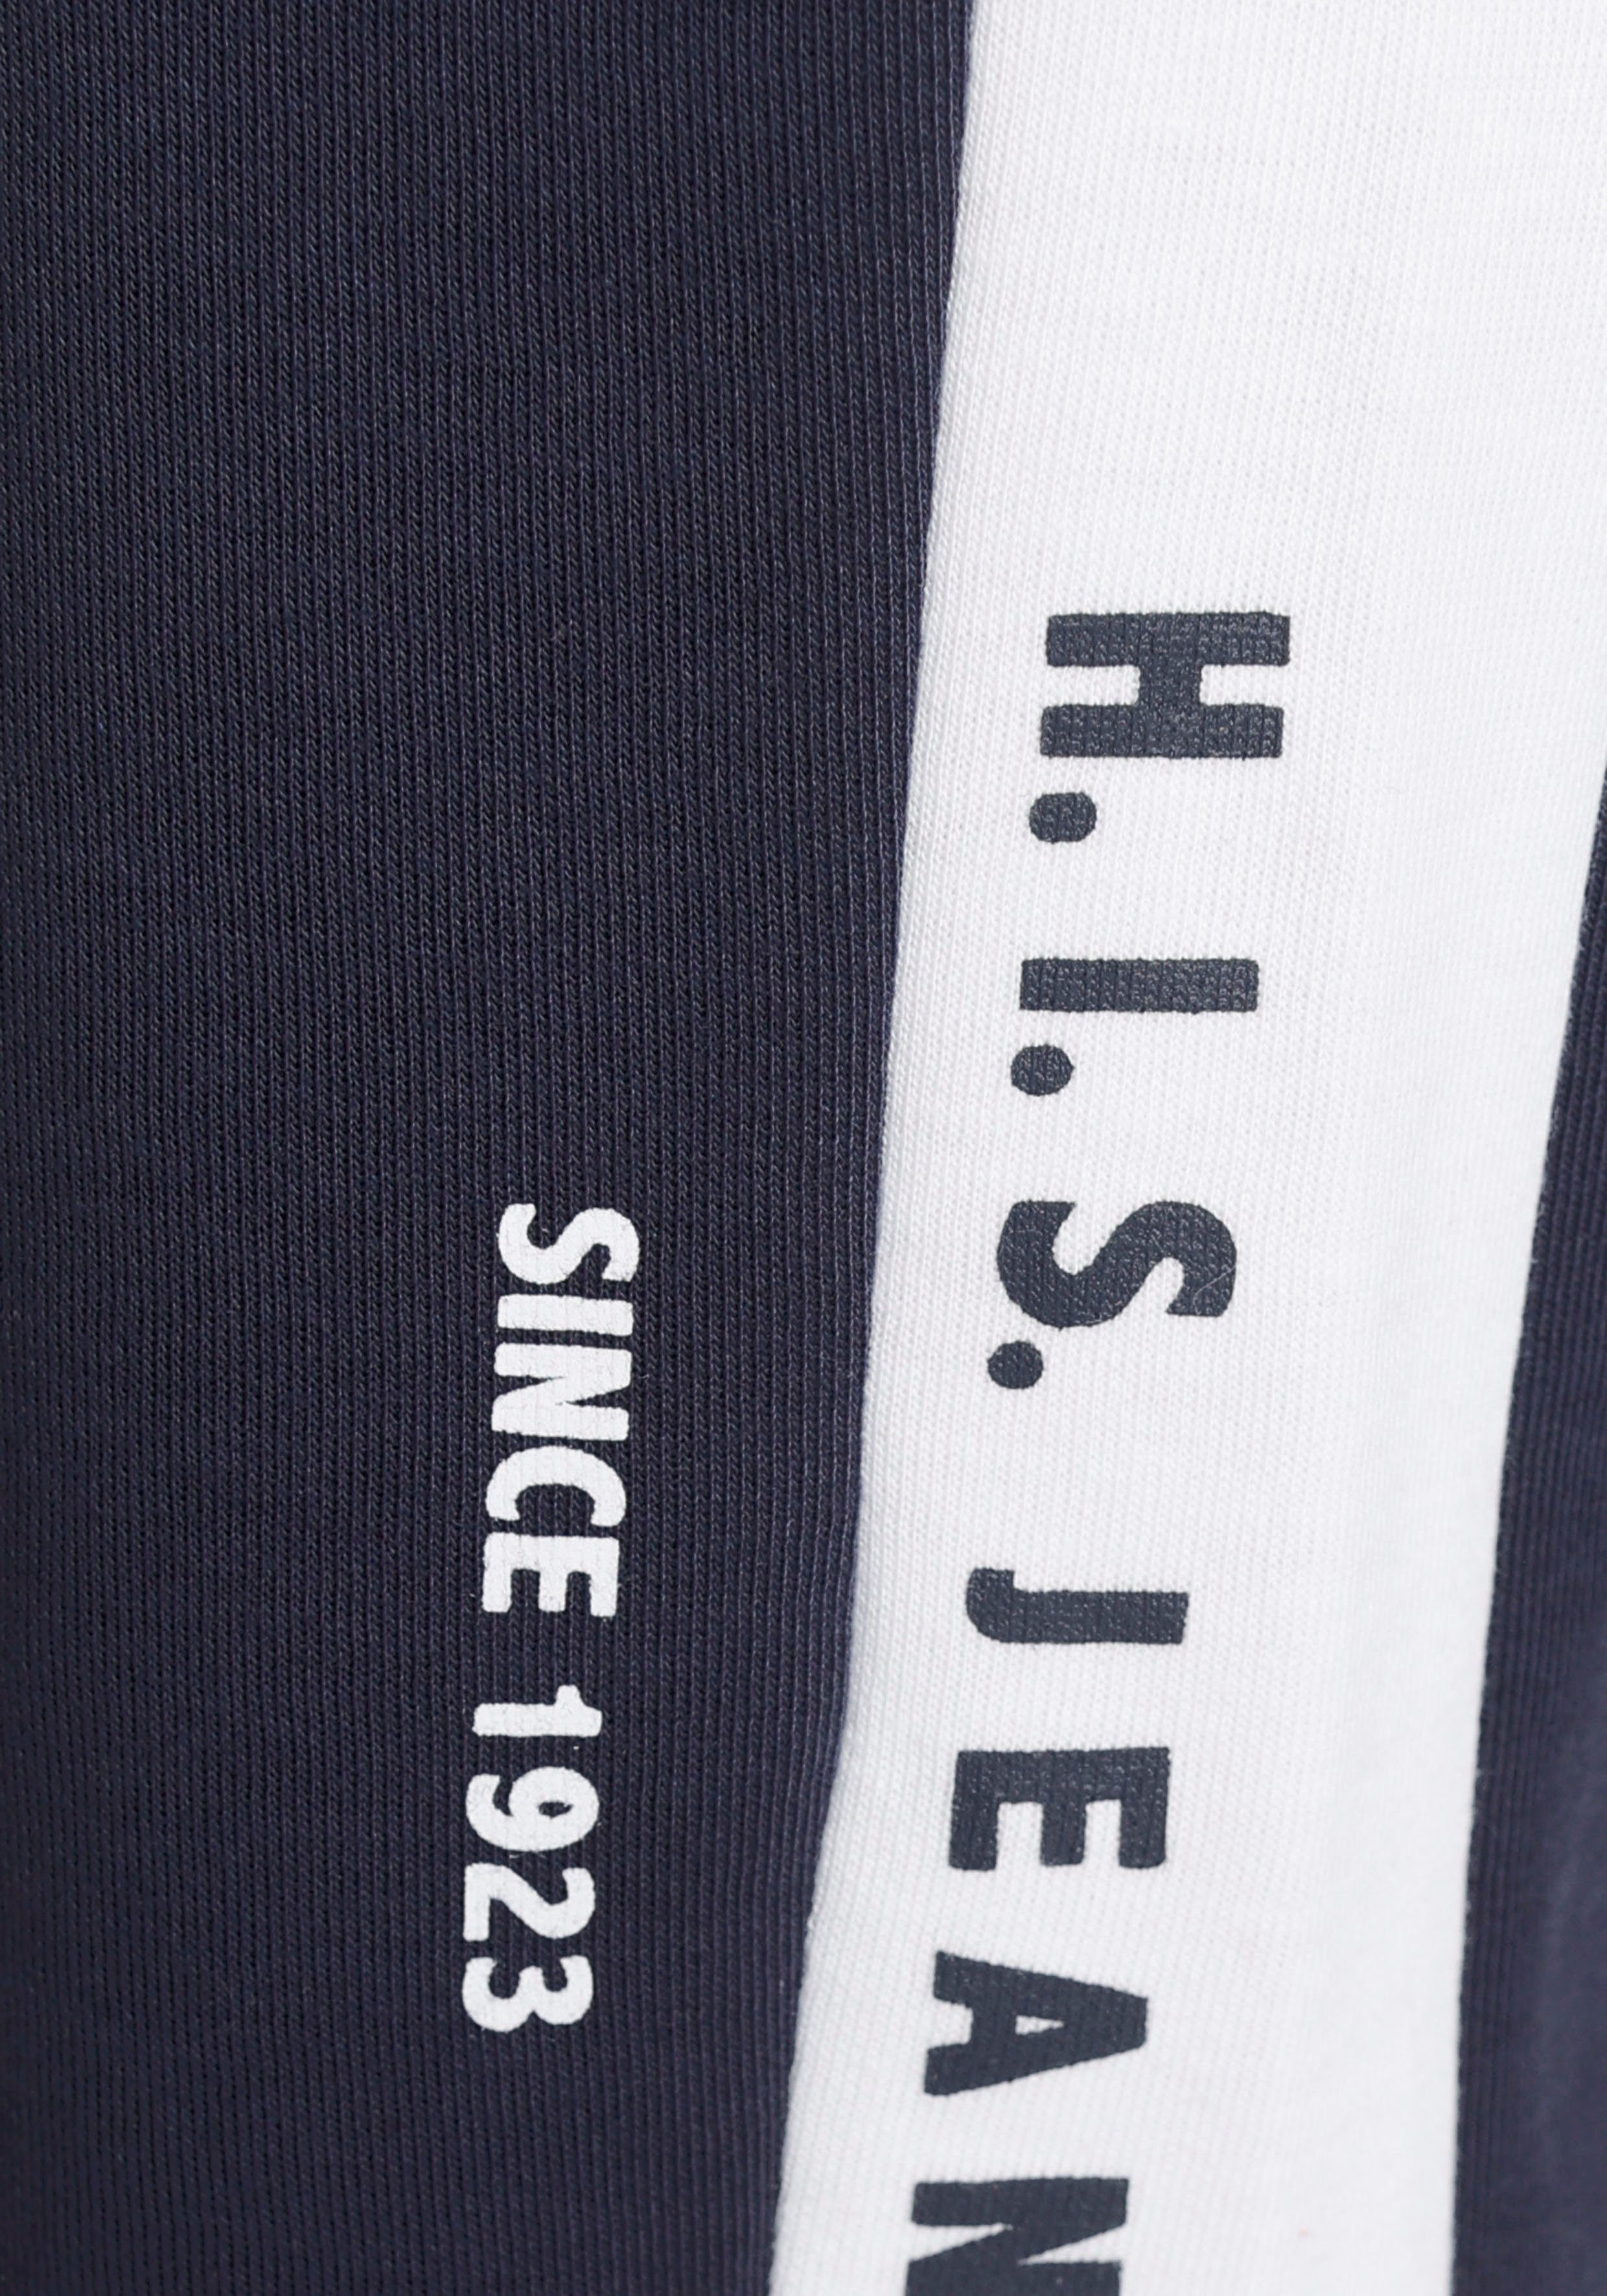 H.I.S Seitenstreifen marine mit weißem Loungeanzug und Relaxhose Logodruck,